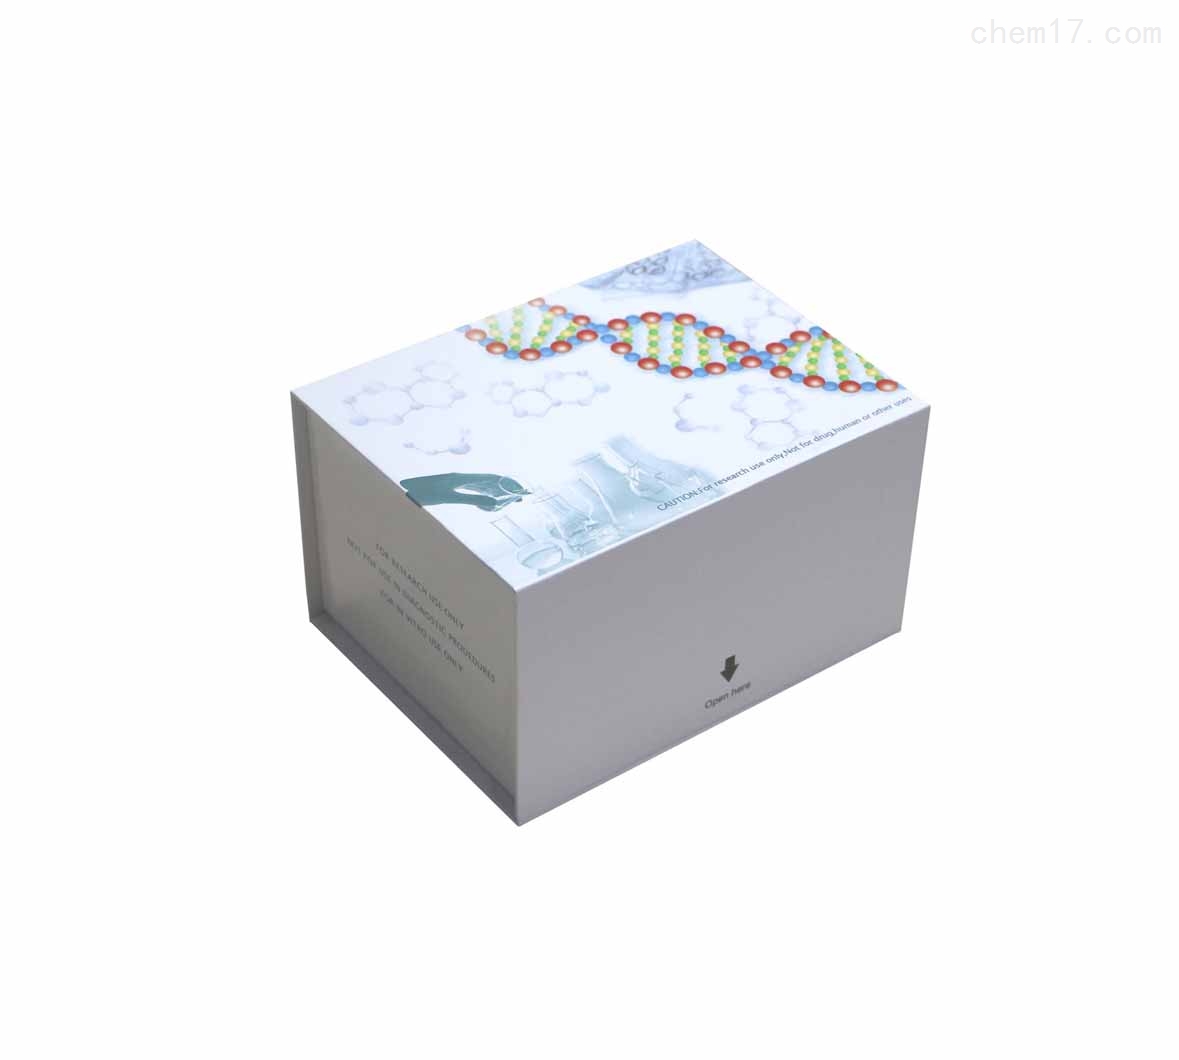 小鼠巨噬细胞炎性蛋白2(MIP-2)ELISA试剂盒买家推荐